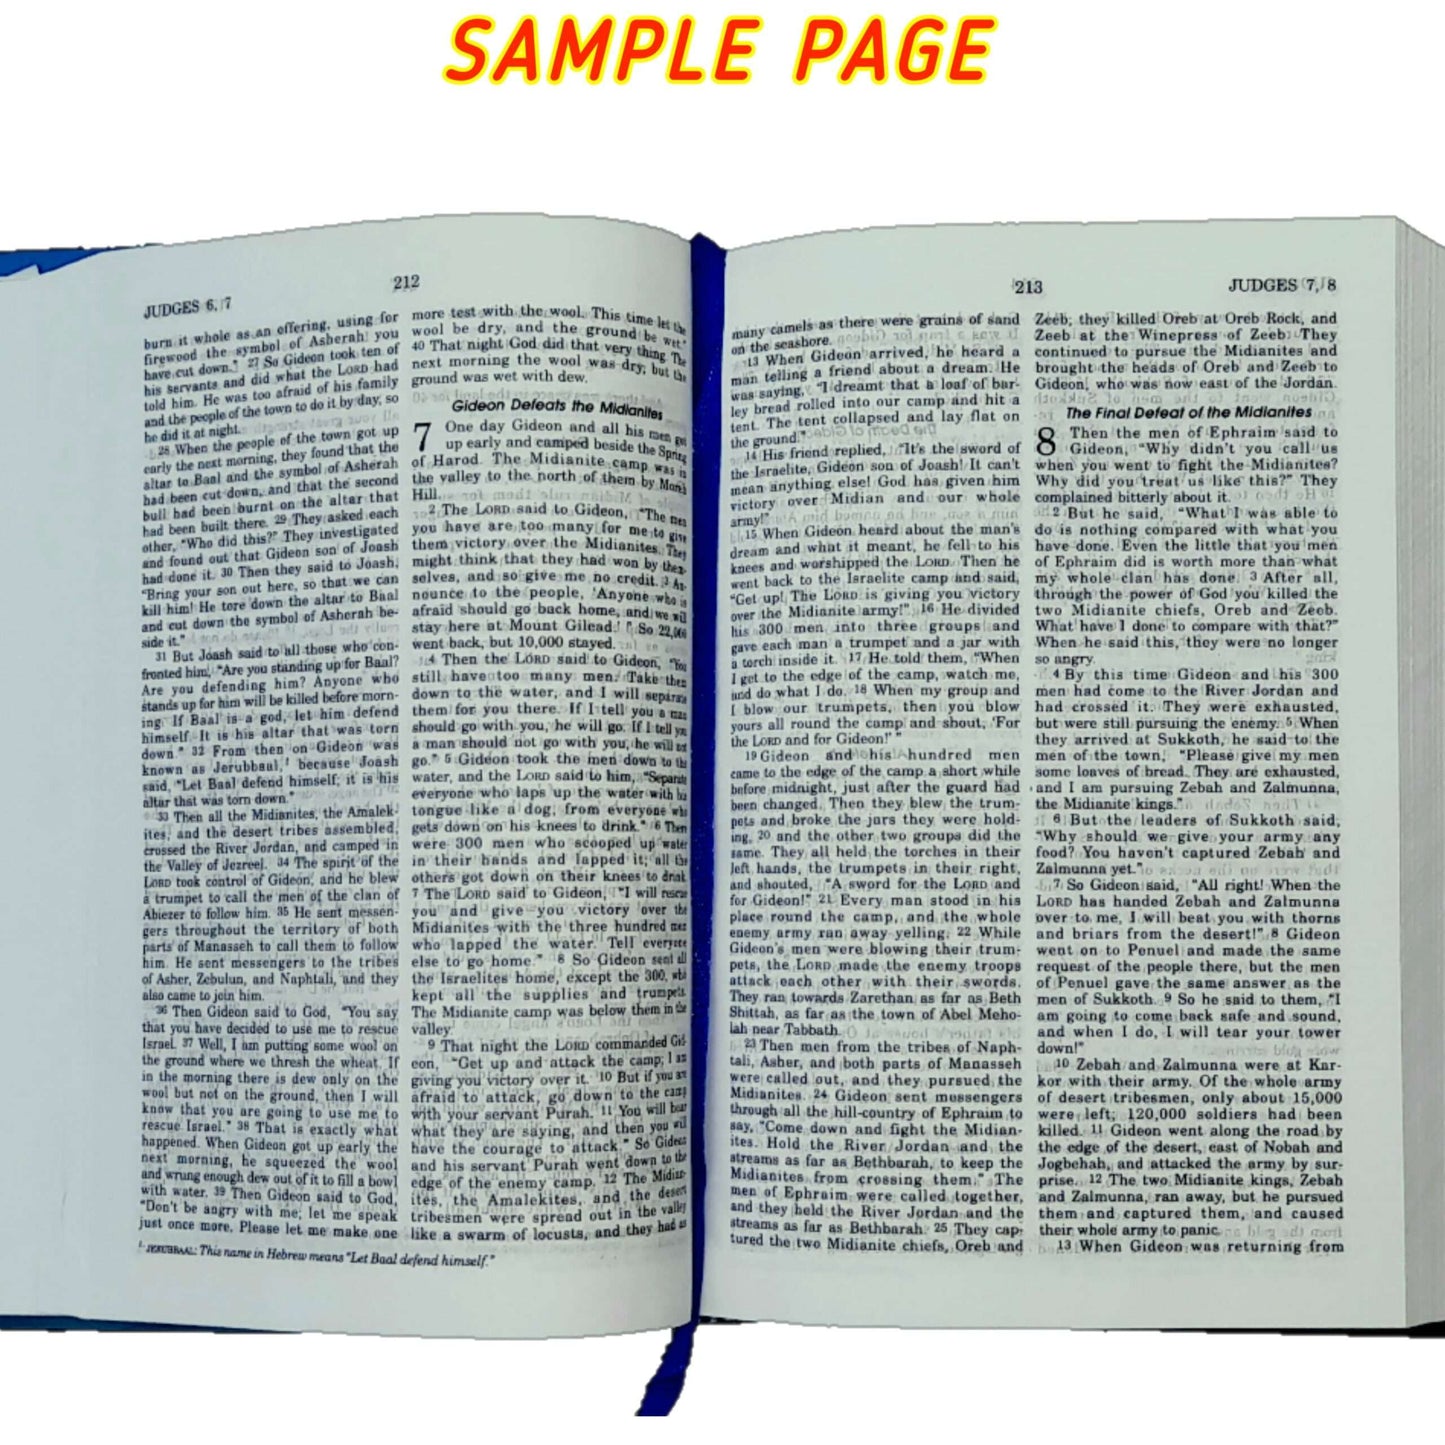 The Holy Small Good News English Bible